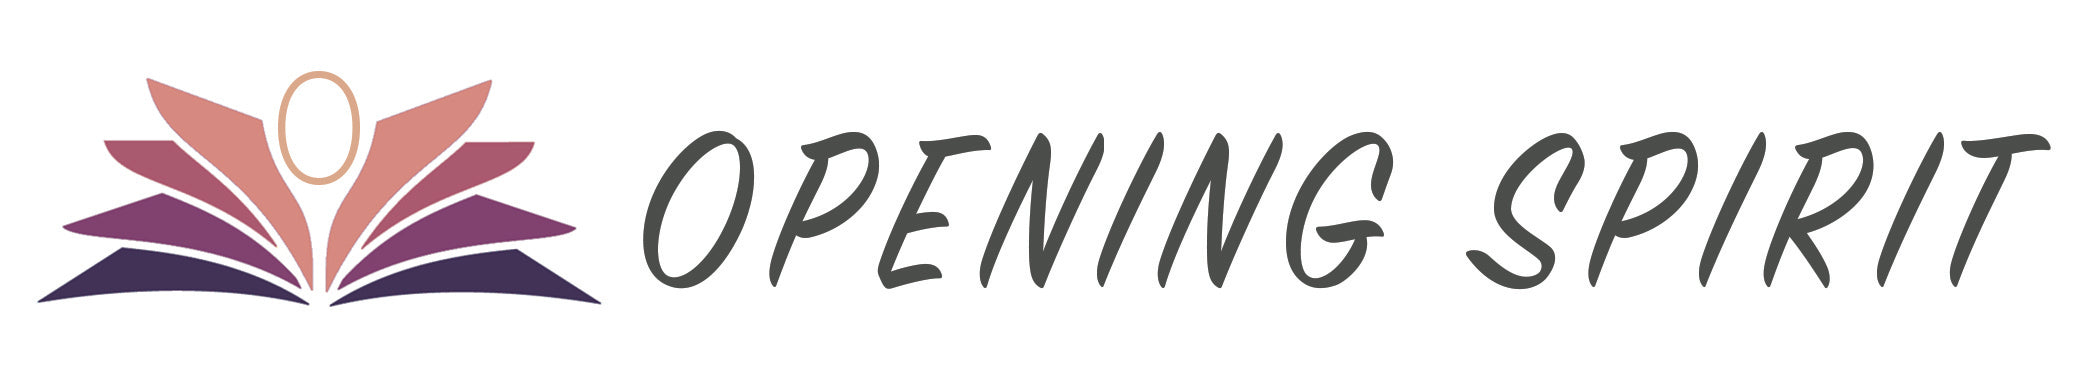 opening spirit logo